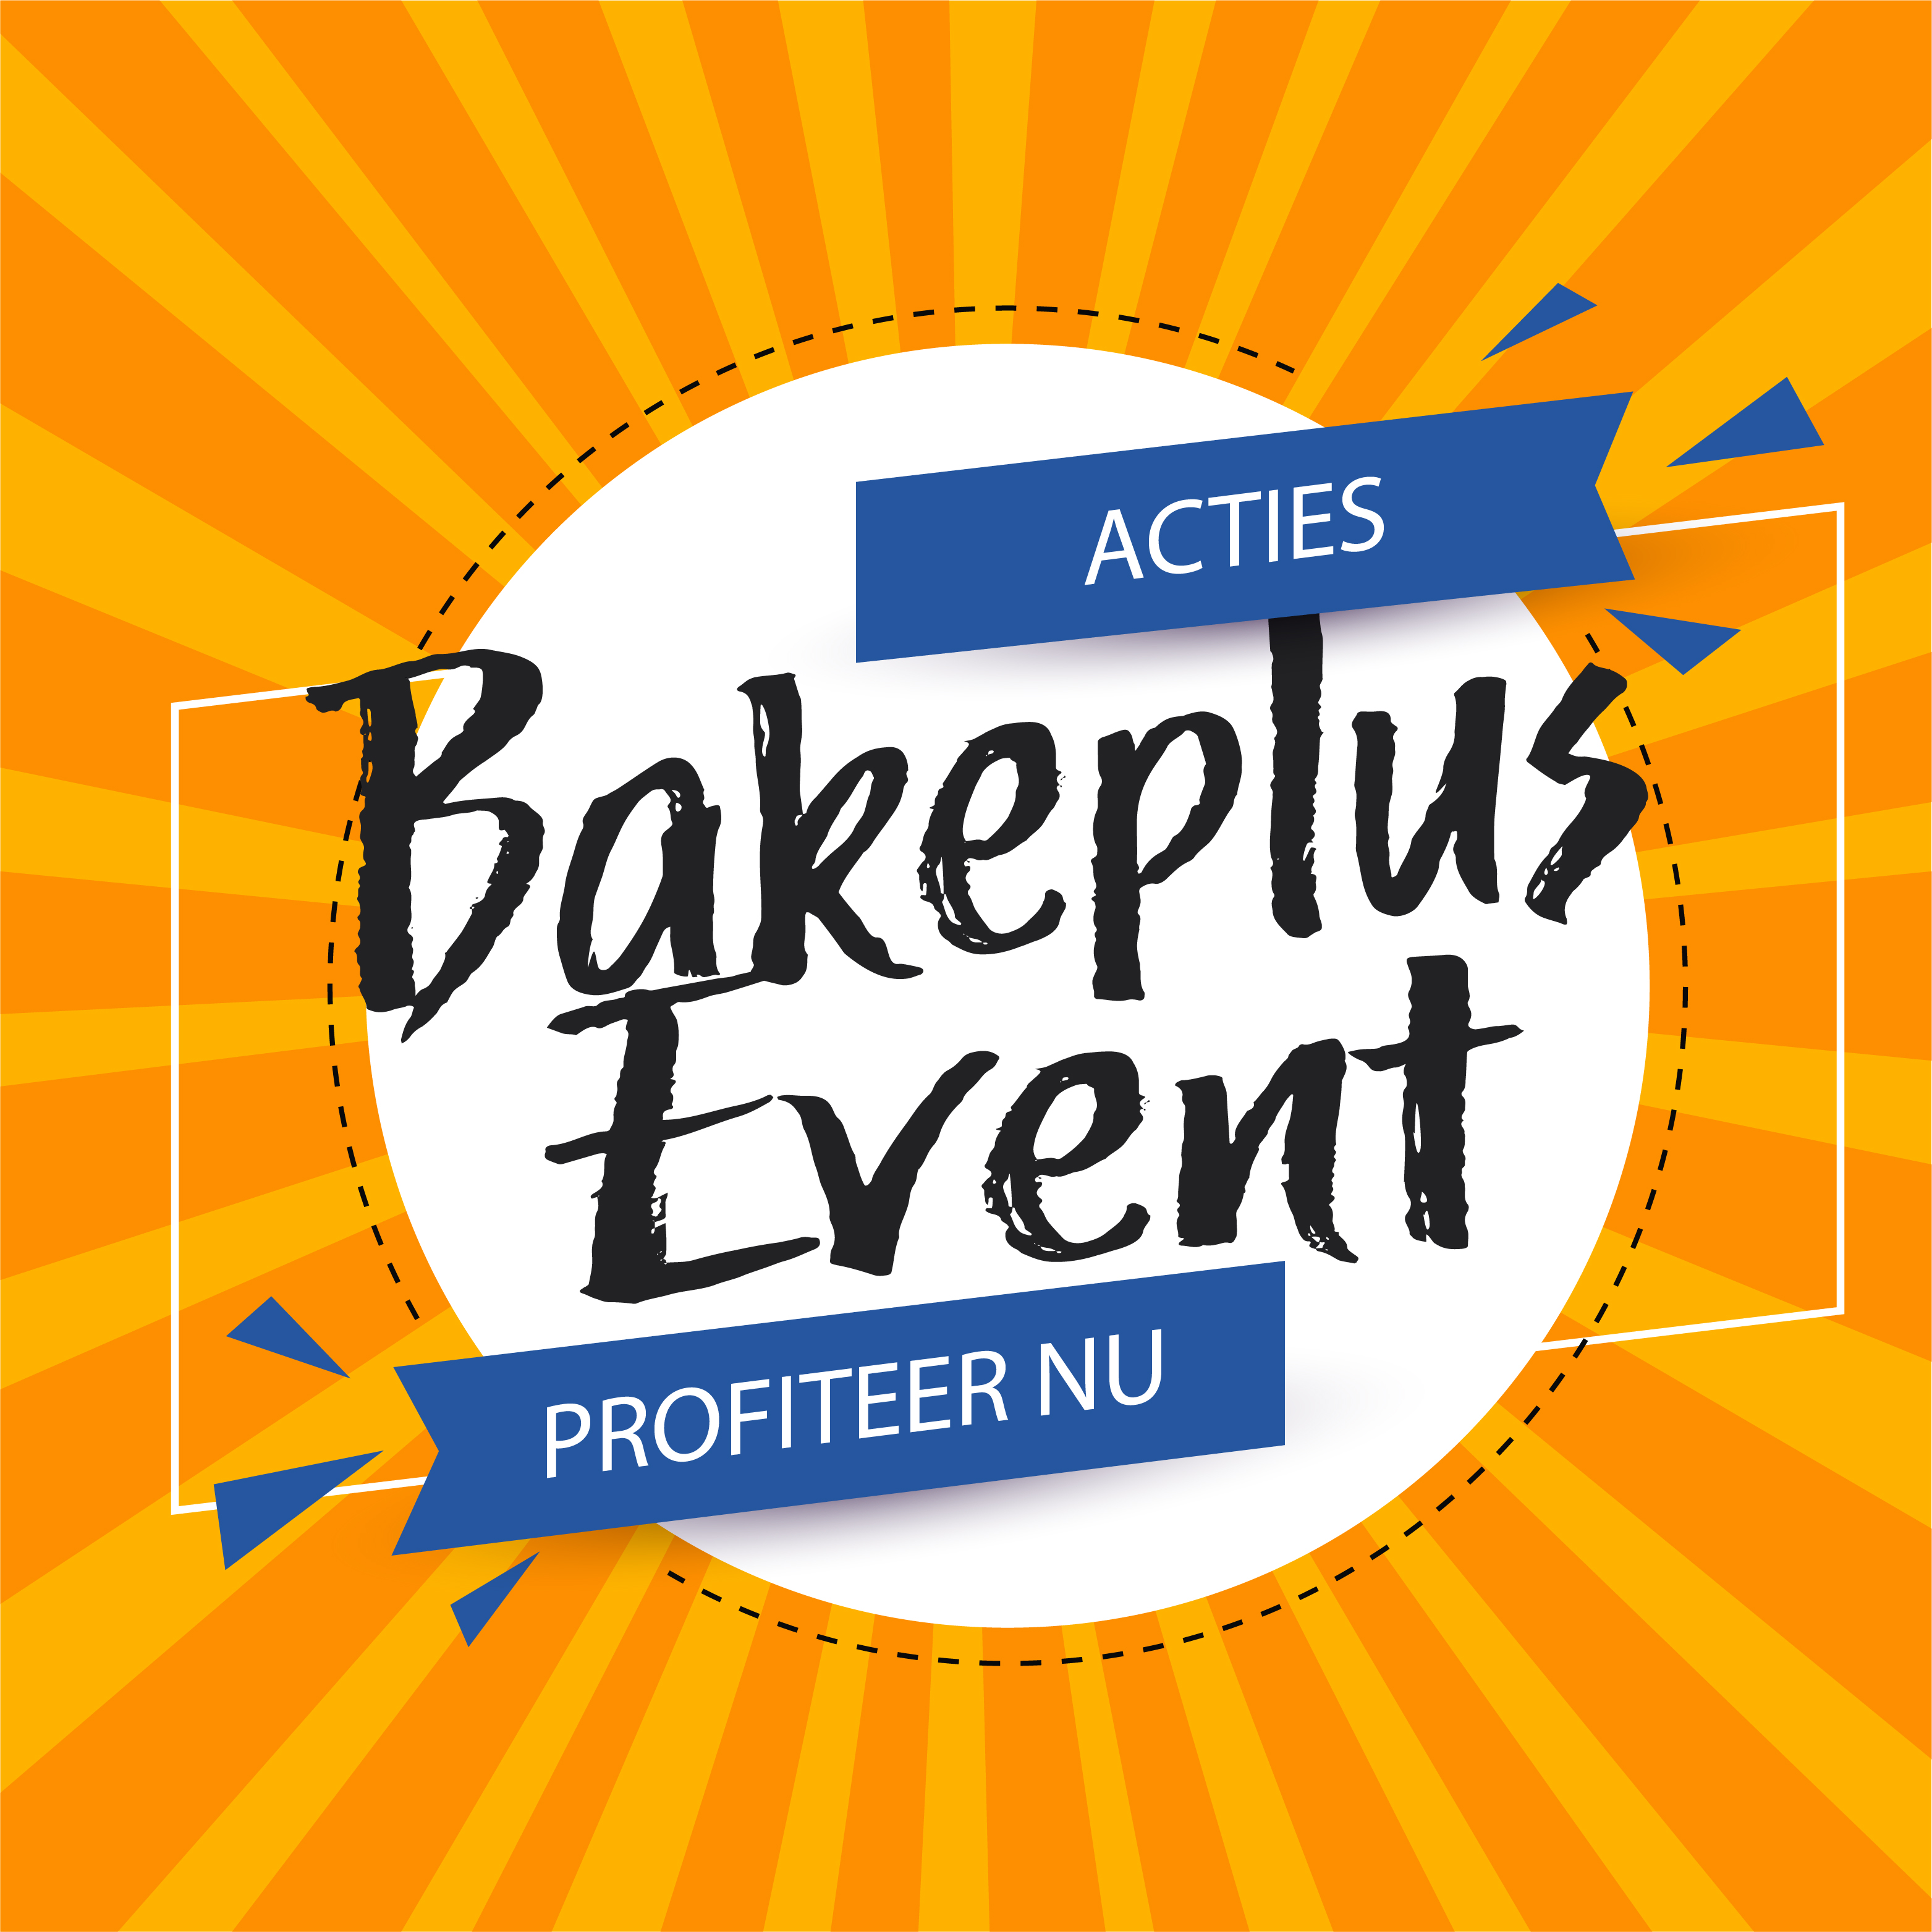 Bakeplus_event_tegel_actiesv2.jpg